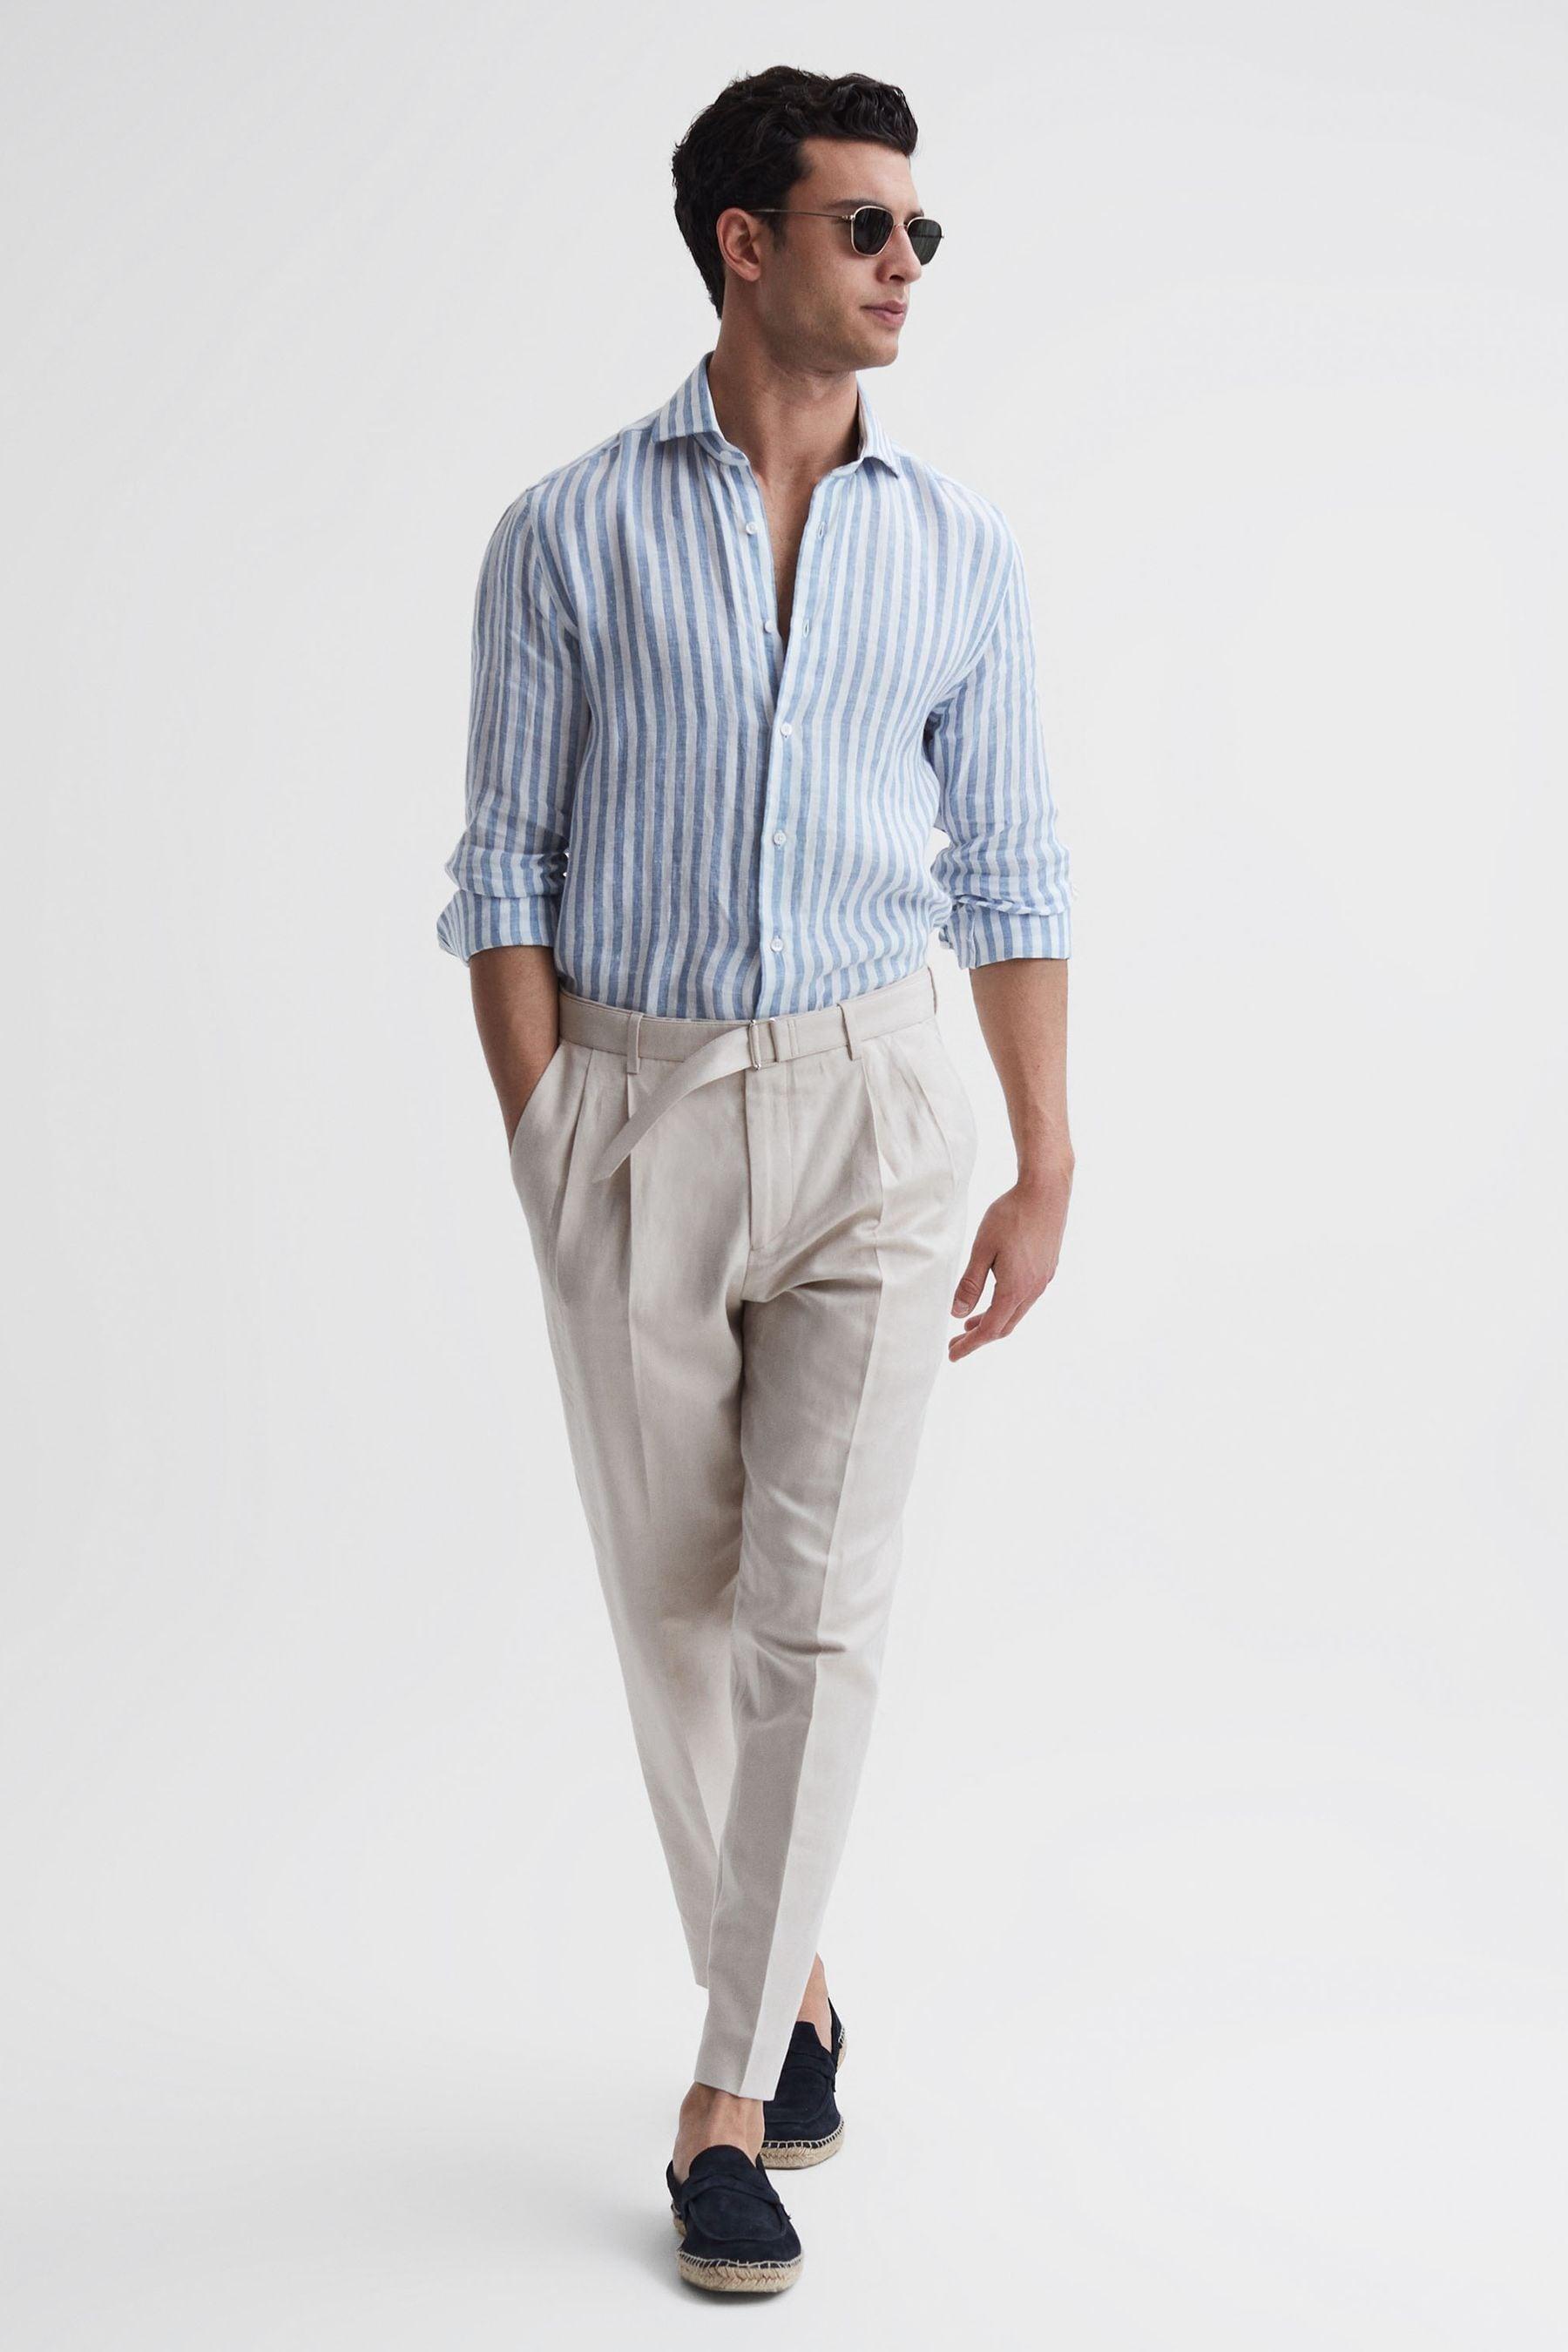 Men's Linen Pants COCOS, Mens Linen Clothing, Linen Trousers -  Canada